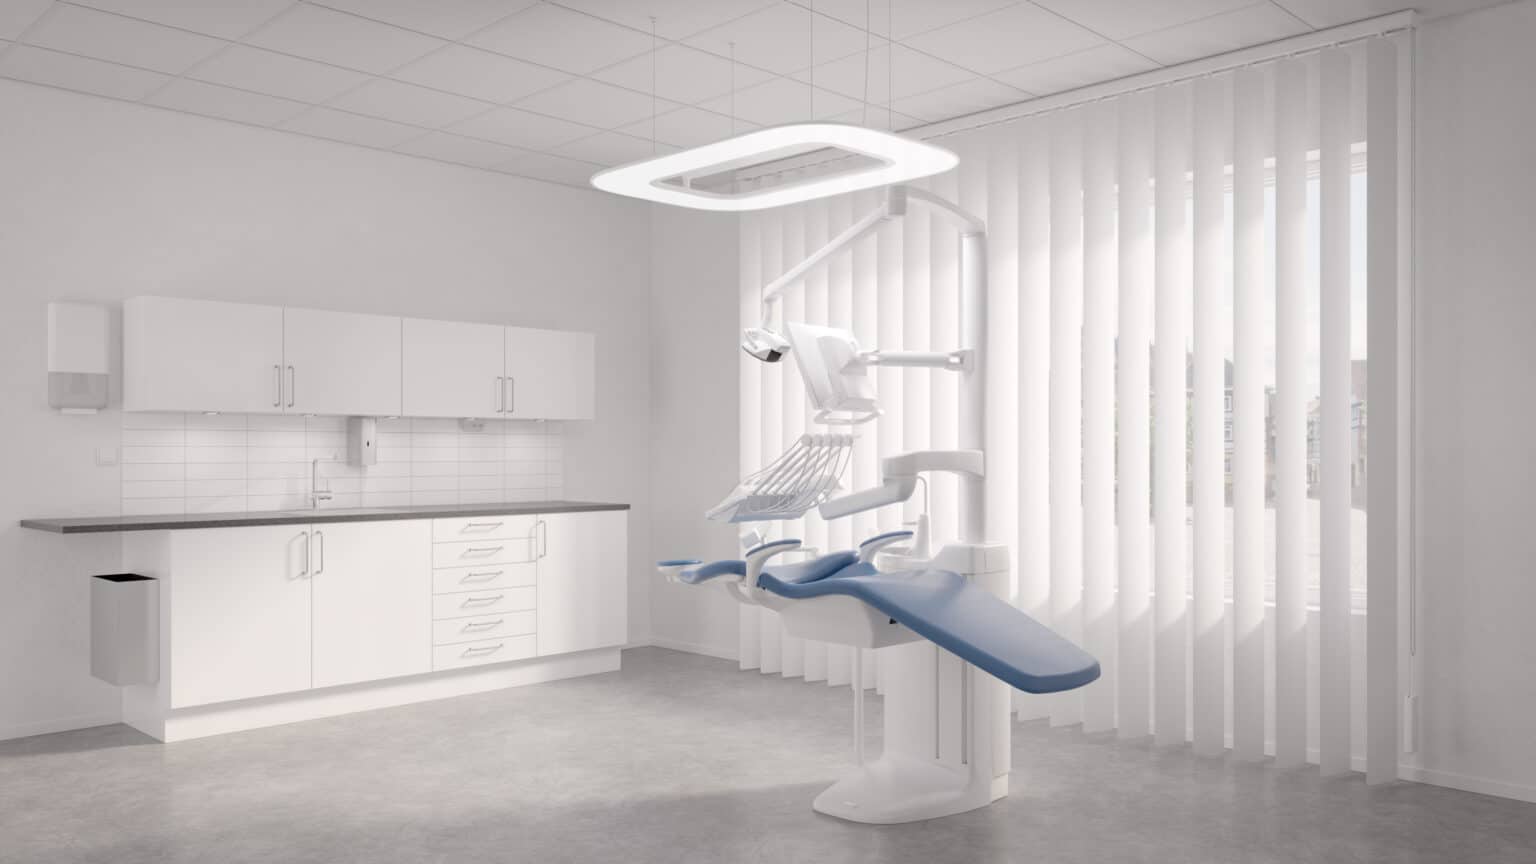 Dentist room lit by Cloud in 6500K